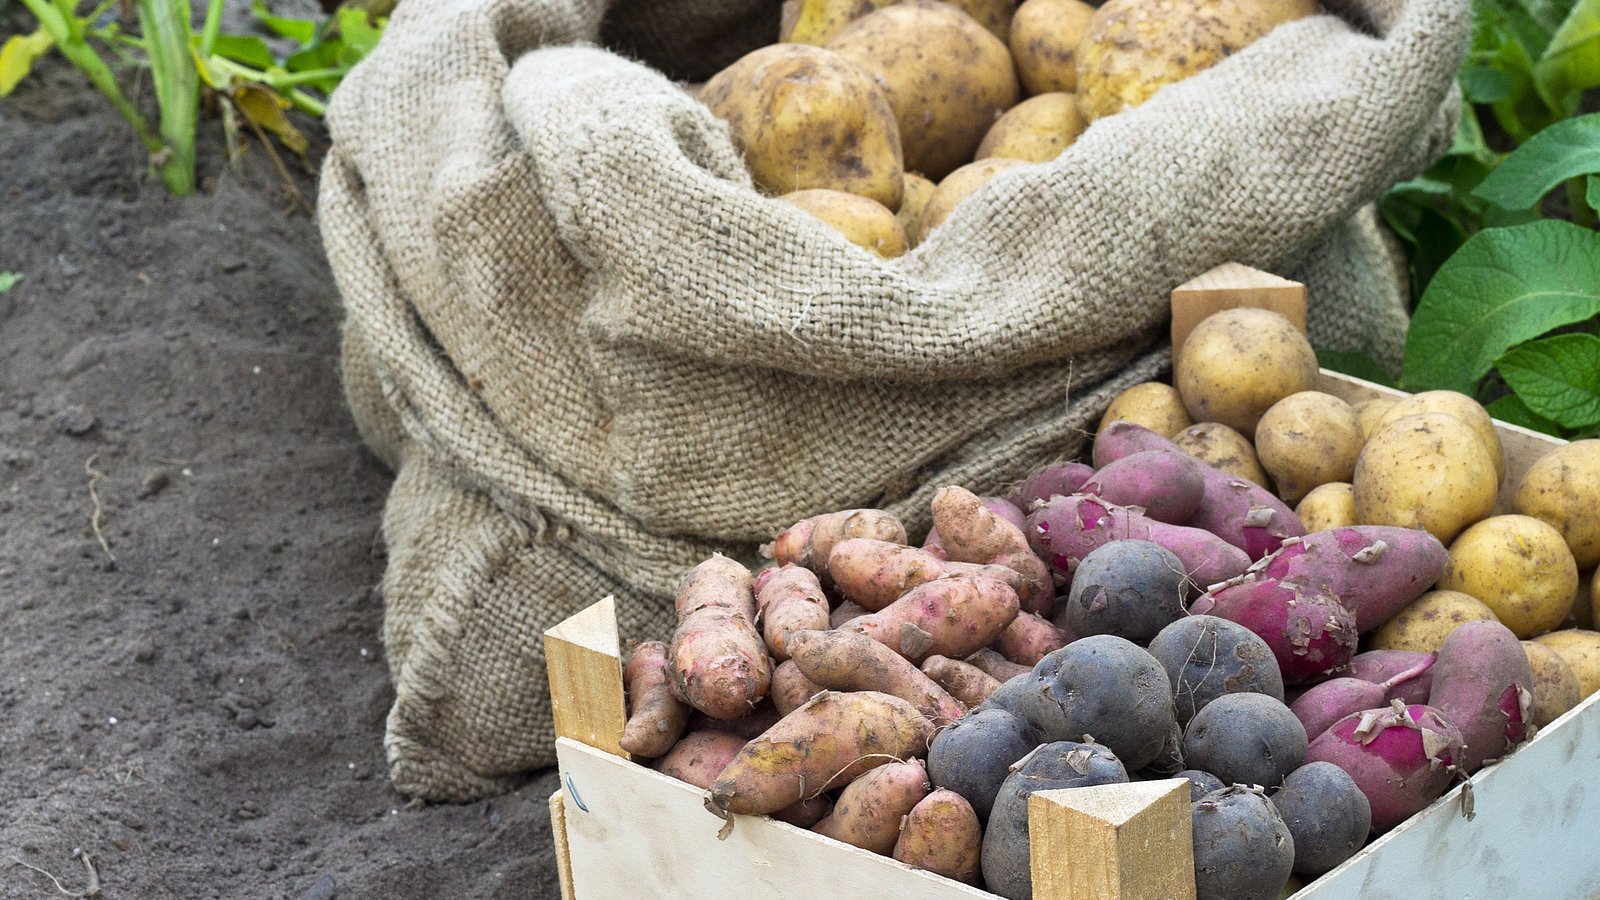 Kartoffeln in unterschiedlichen Farben und Größen liegen in einem Sack und einer Kiste.